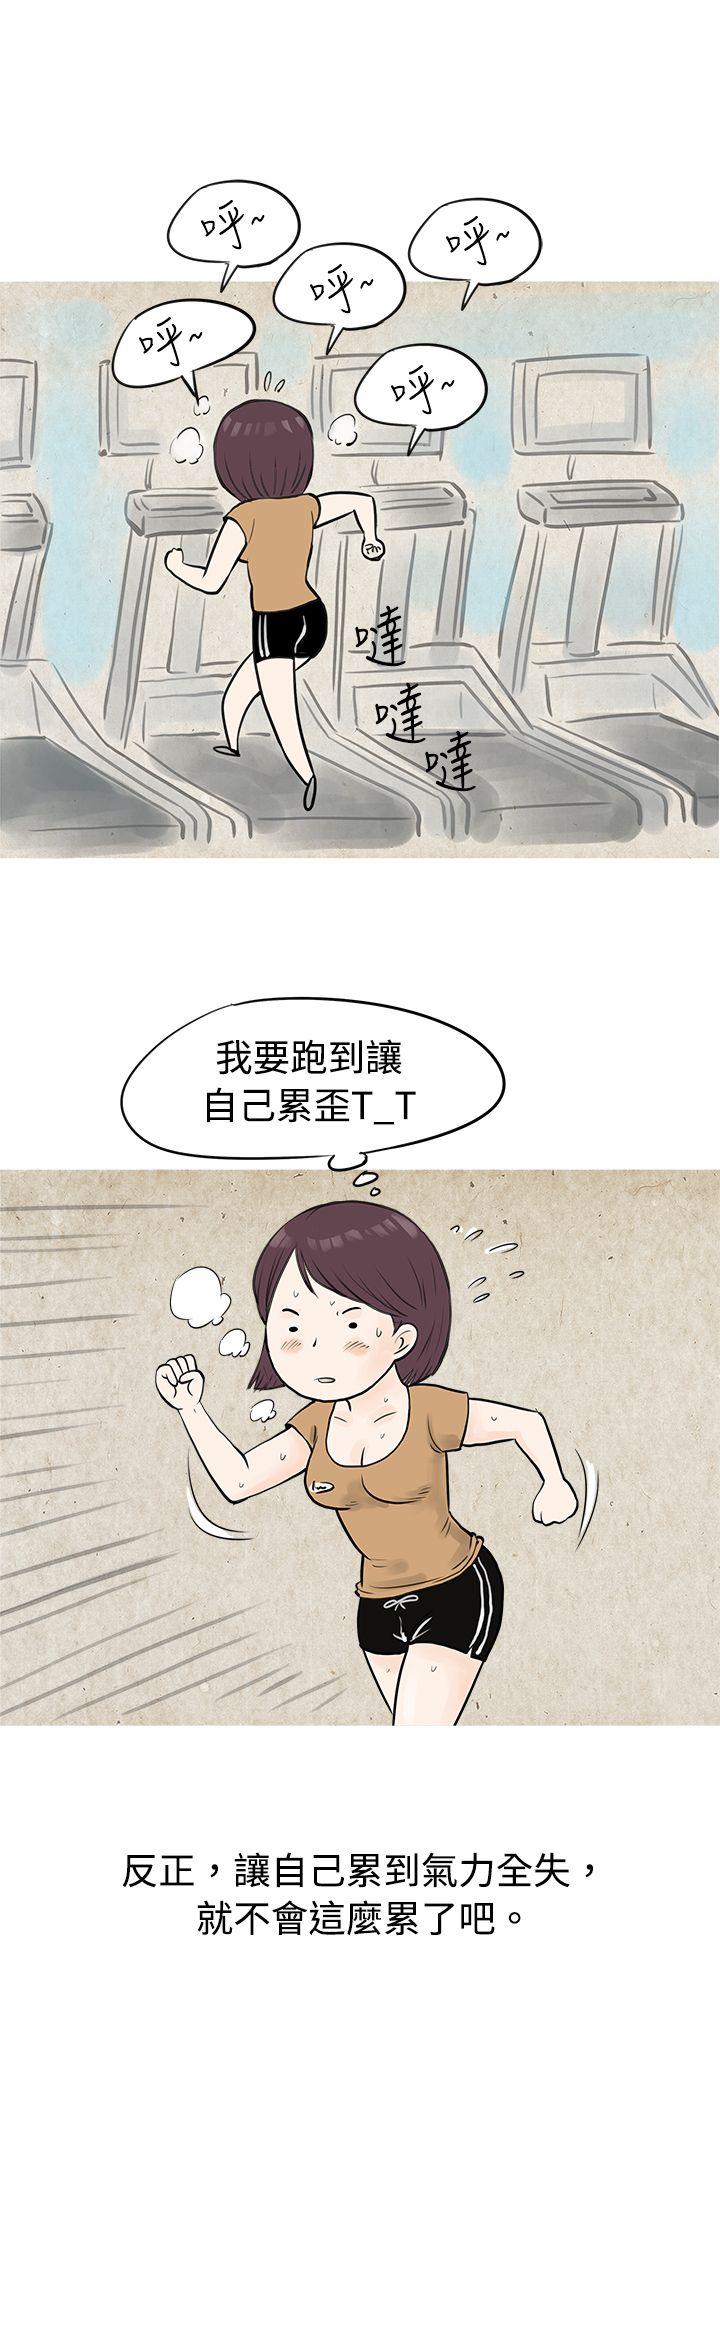 韩国污漫画 秘密Story 到健身房解决需求(上) 12